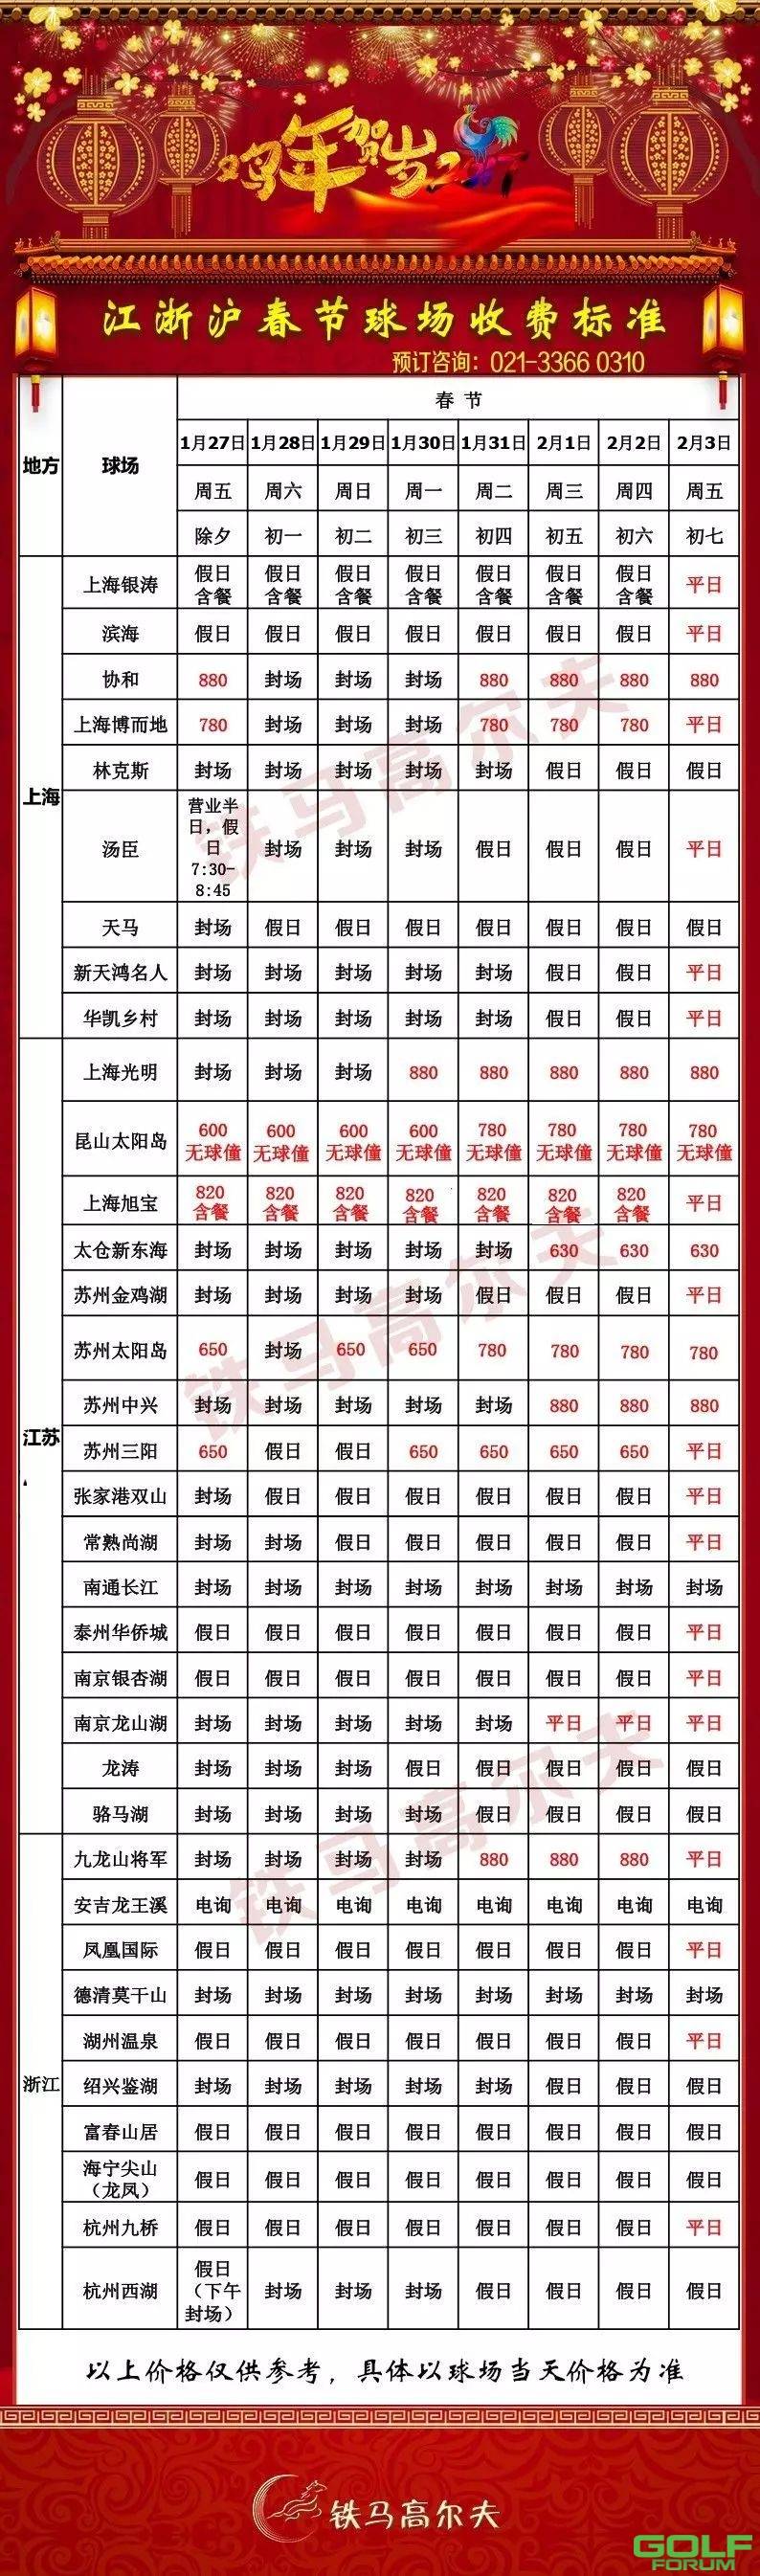 江浙沪2017年春节球场收费标准